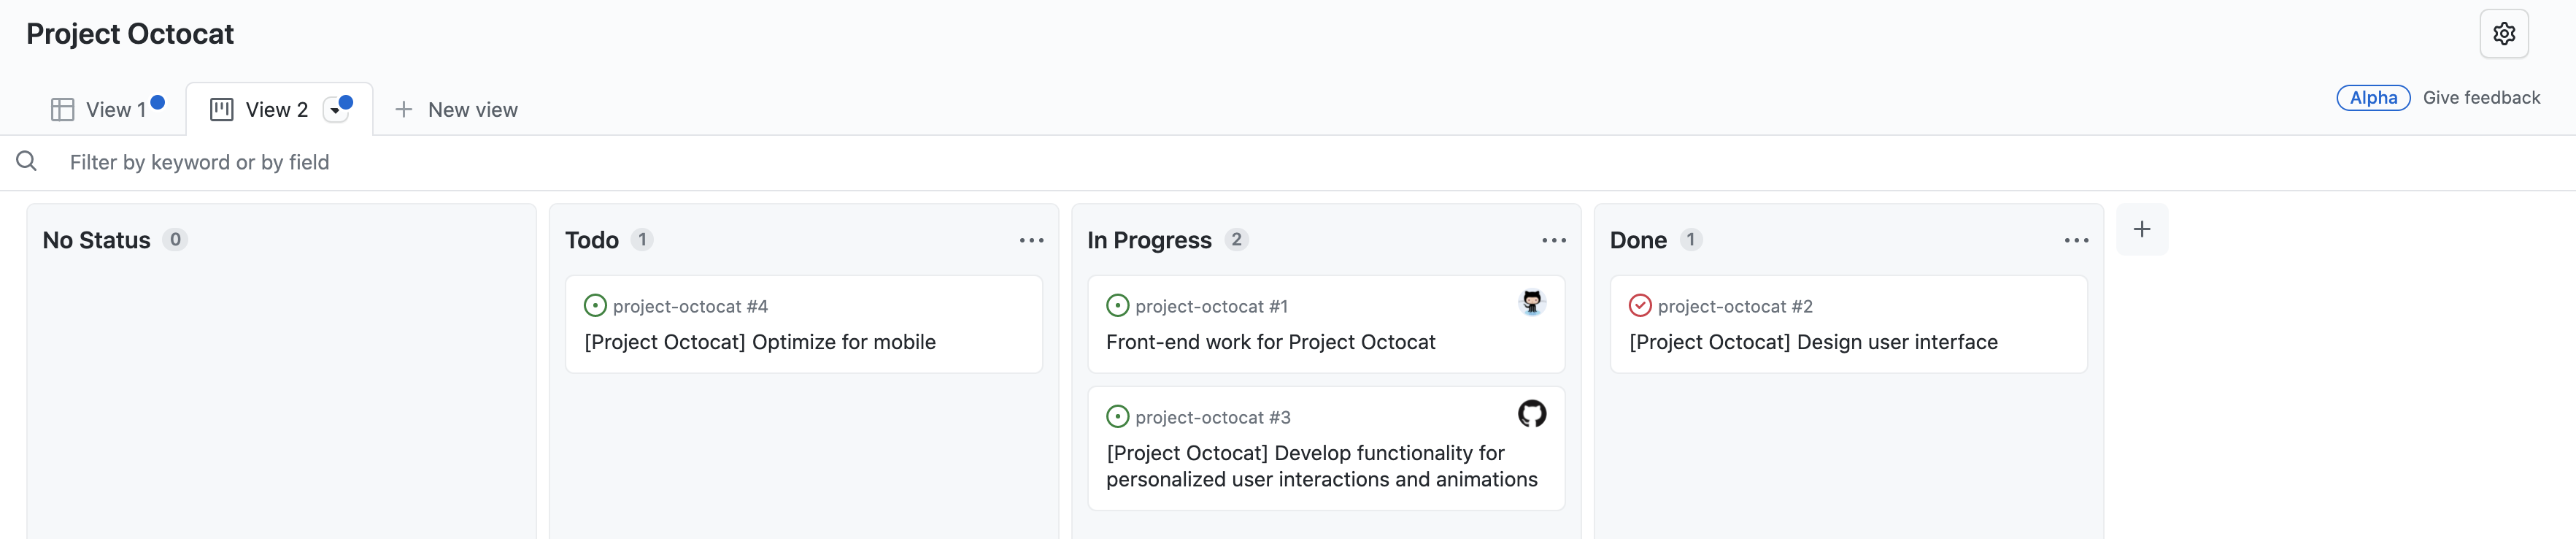 Captura de pantalla de la vista de panel del proyecto "Project Octocat", con problemas organizados en columnas para "Sin estado", "Pendiente", "En curso" y "Listo".